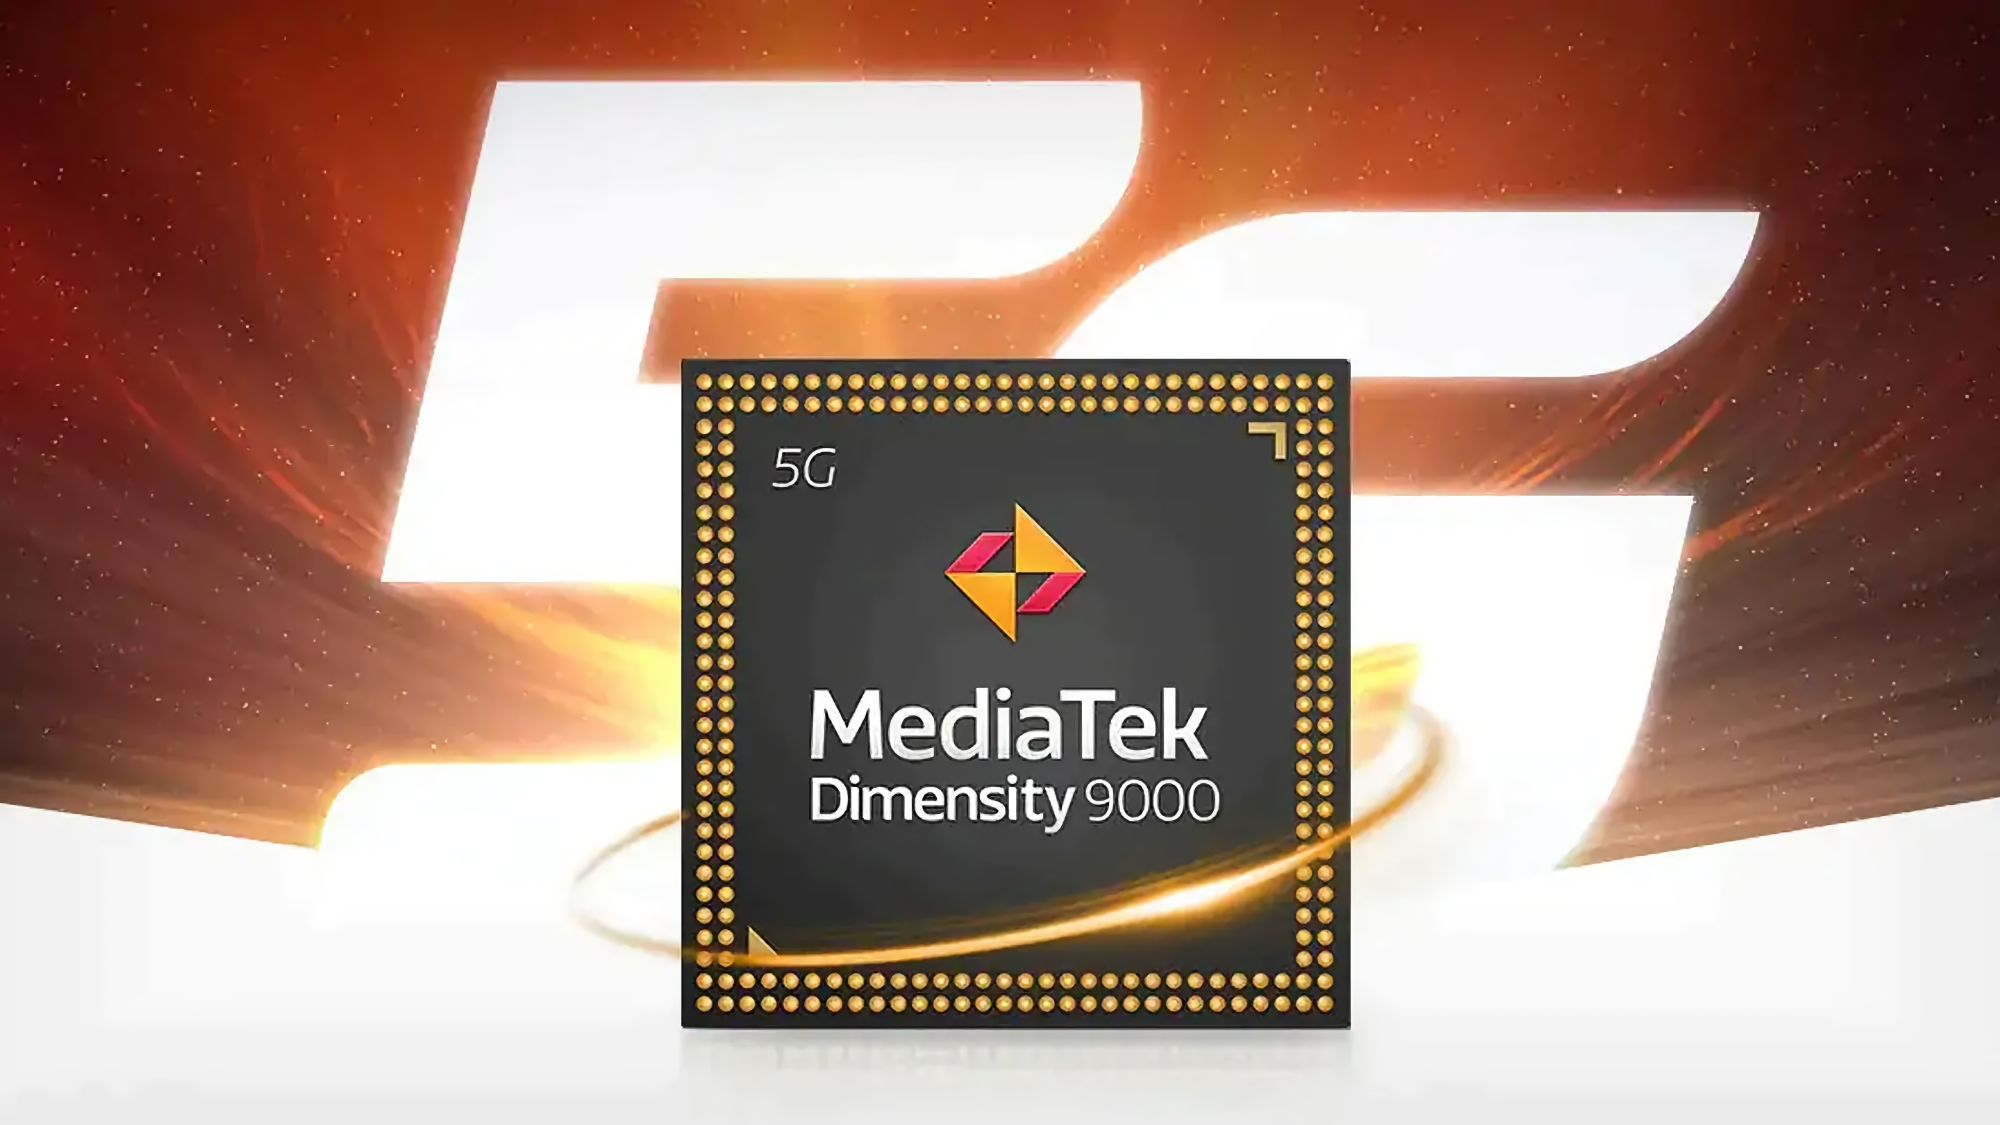 Джерело: перший смартфон на базі чіпа MediaTek Dimensity 9000 вийде на ринок у лютому